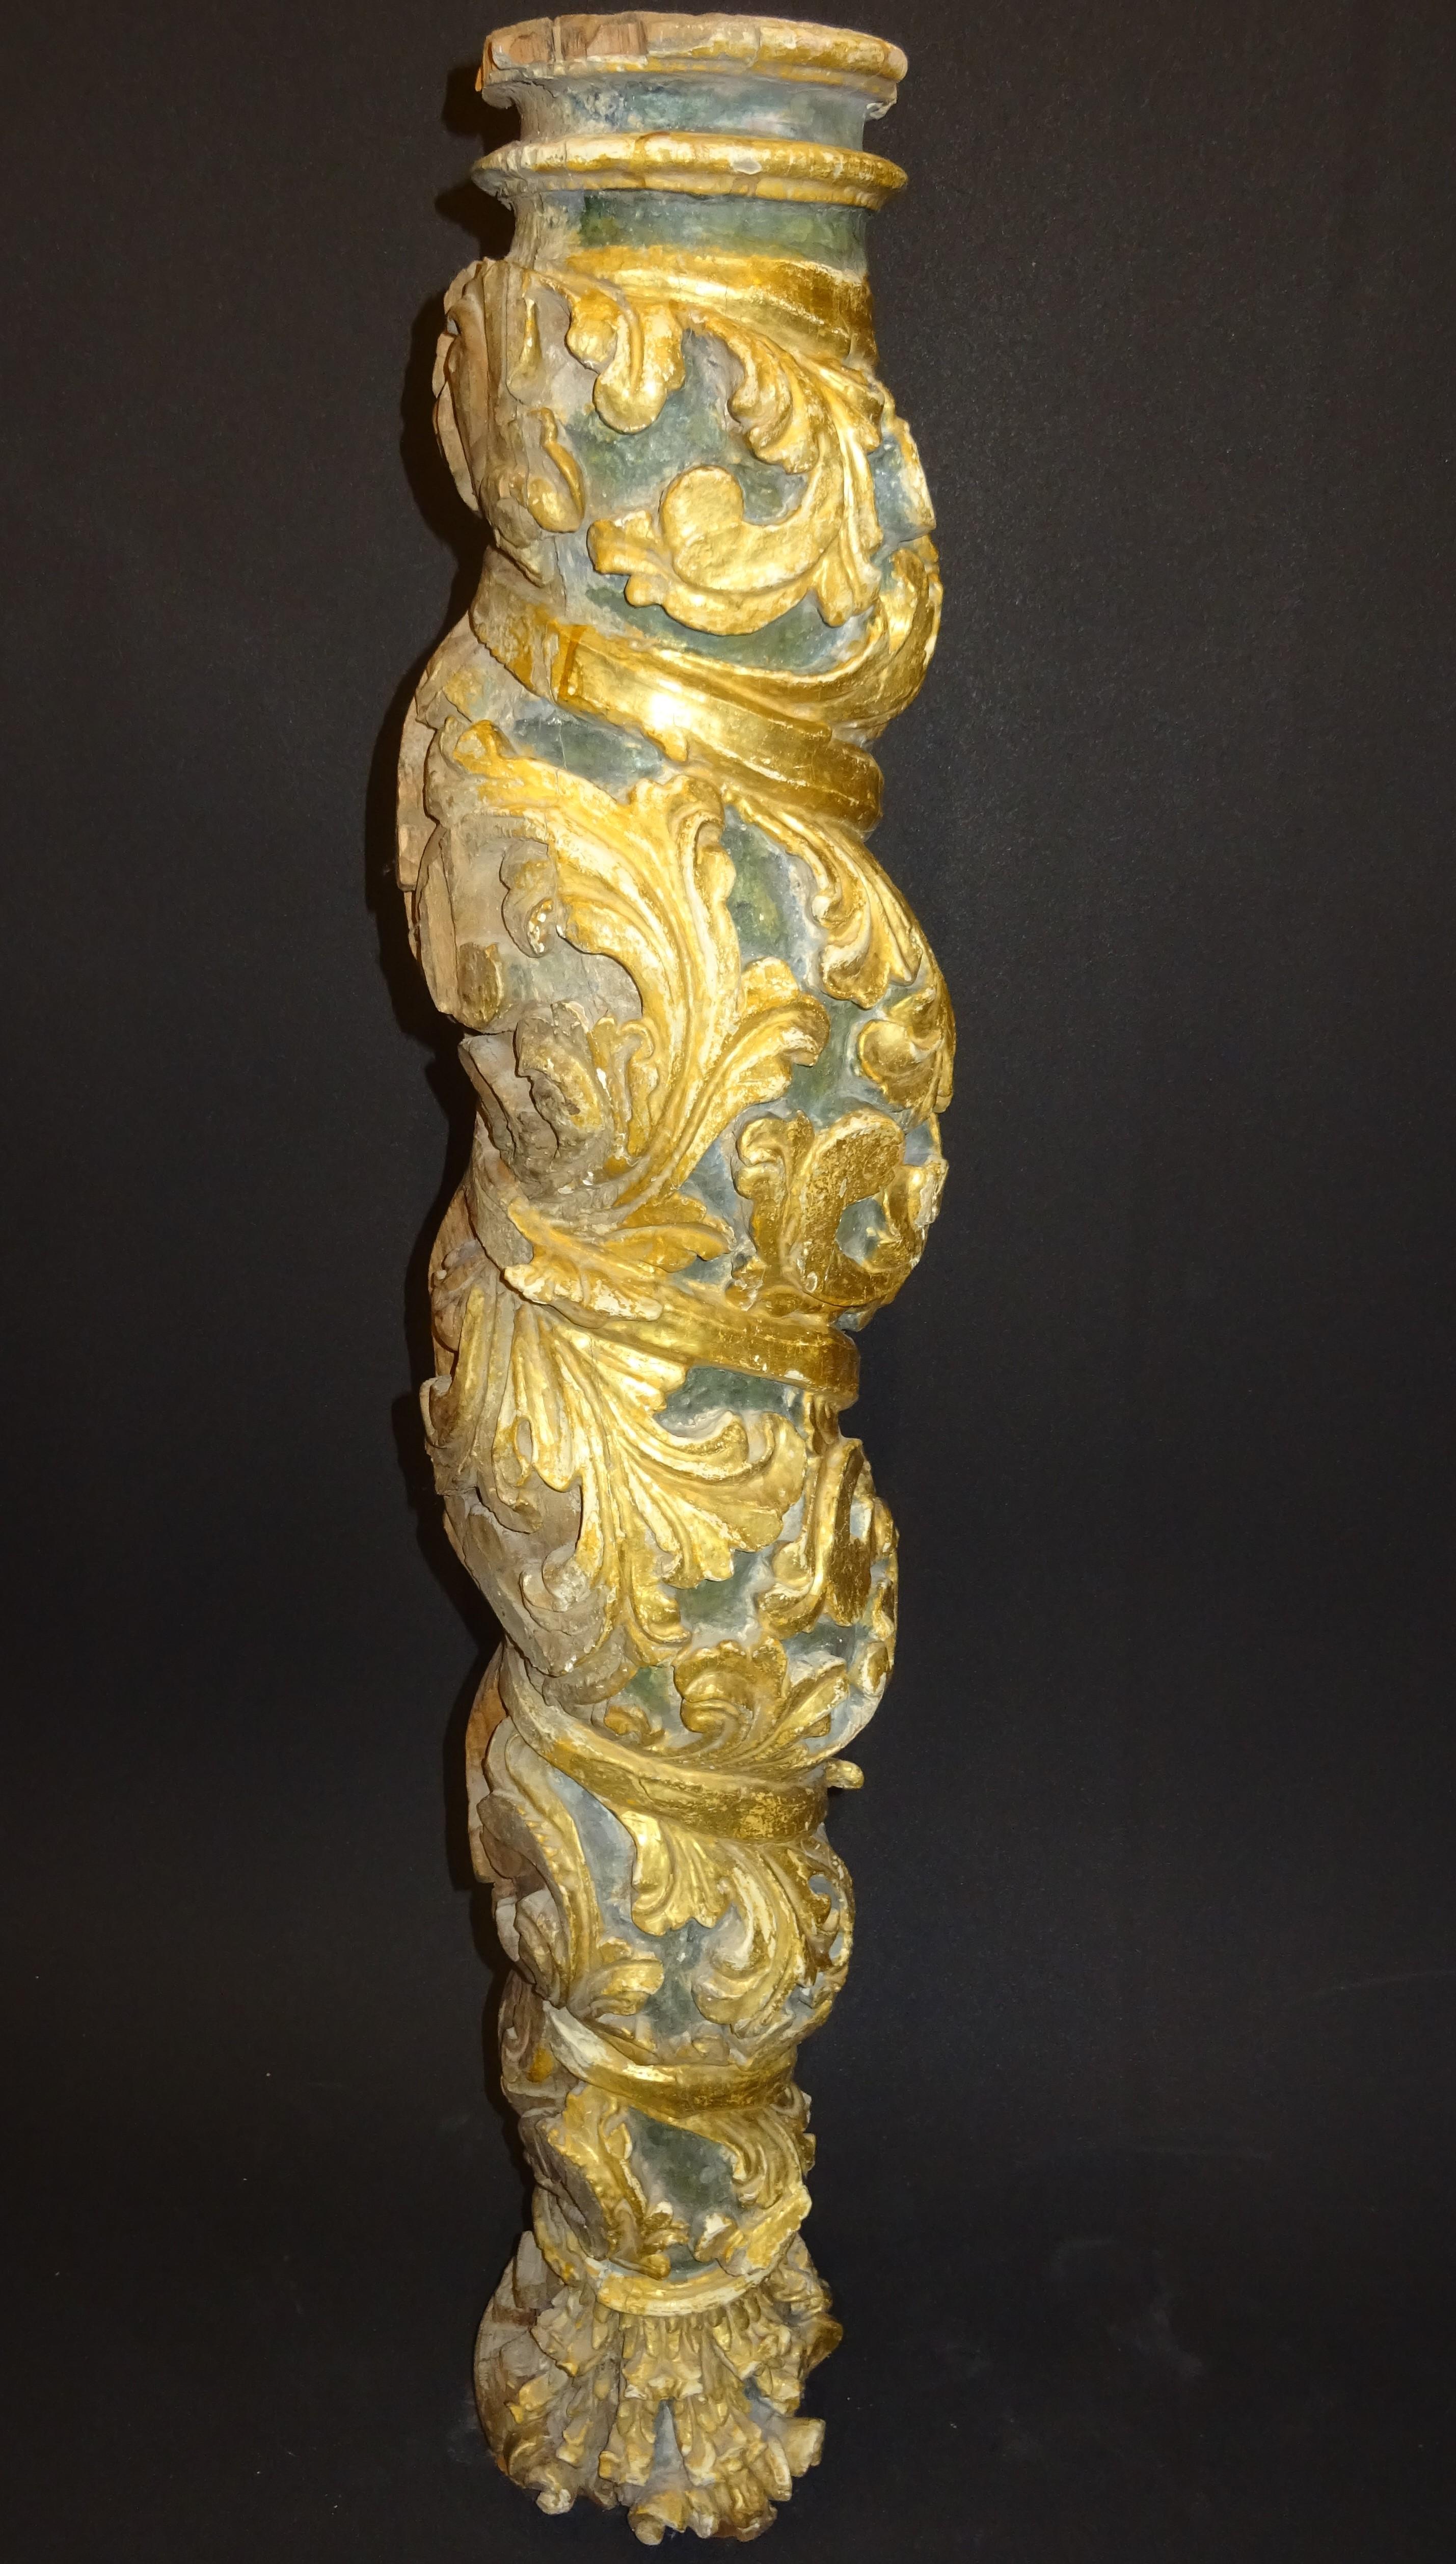 Einzigartige spanische Barock Salomonic Gold, Polychromie und geschnitztem Holz.
Es ist ein atemberaubendes Stück für einen Kunstsammler oder ein wunderschönes Interieur, es ist geeignet, um einen Hauch von Charakter und Exquisitität zu jedem